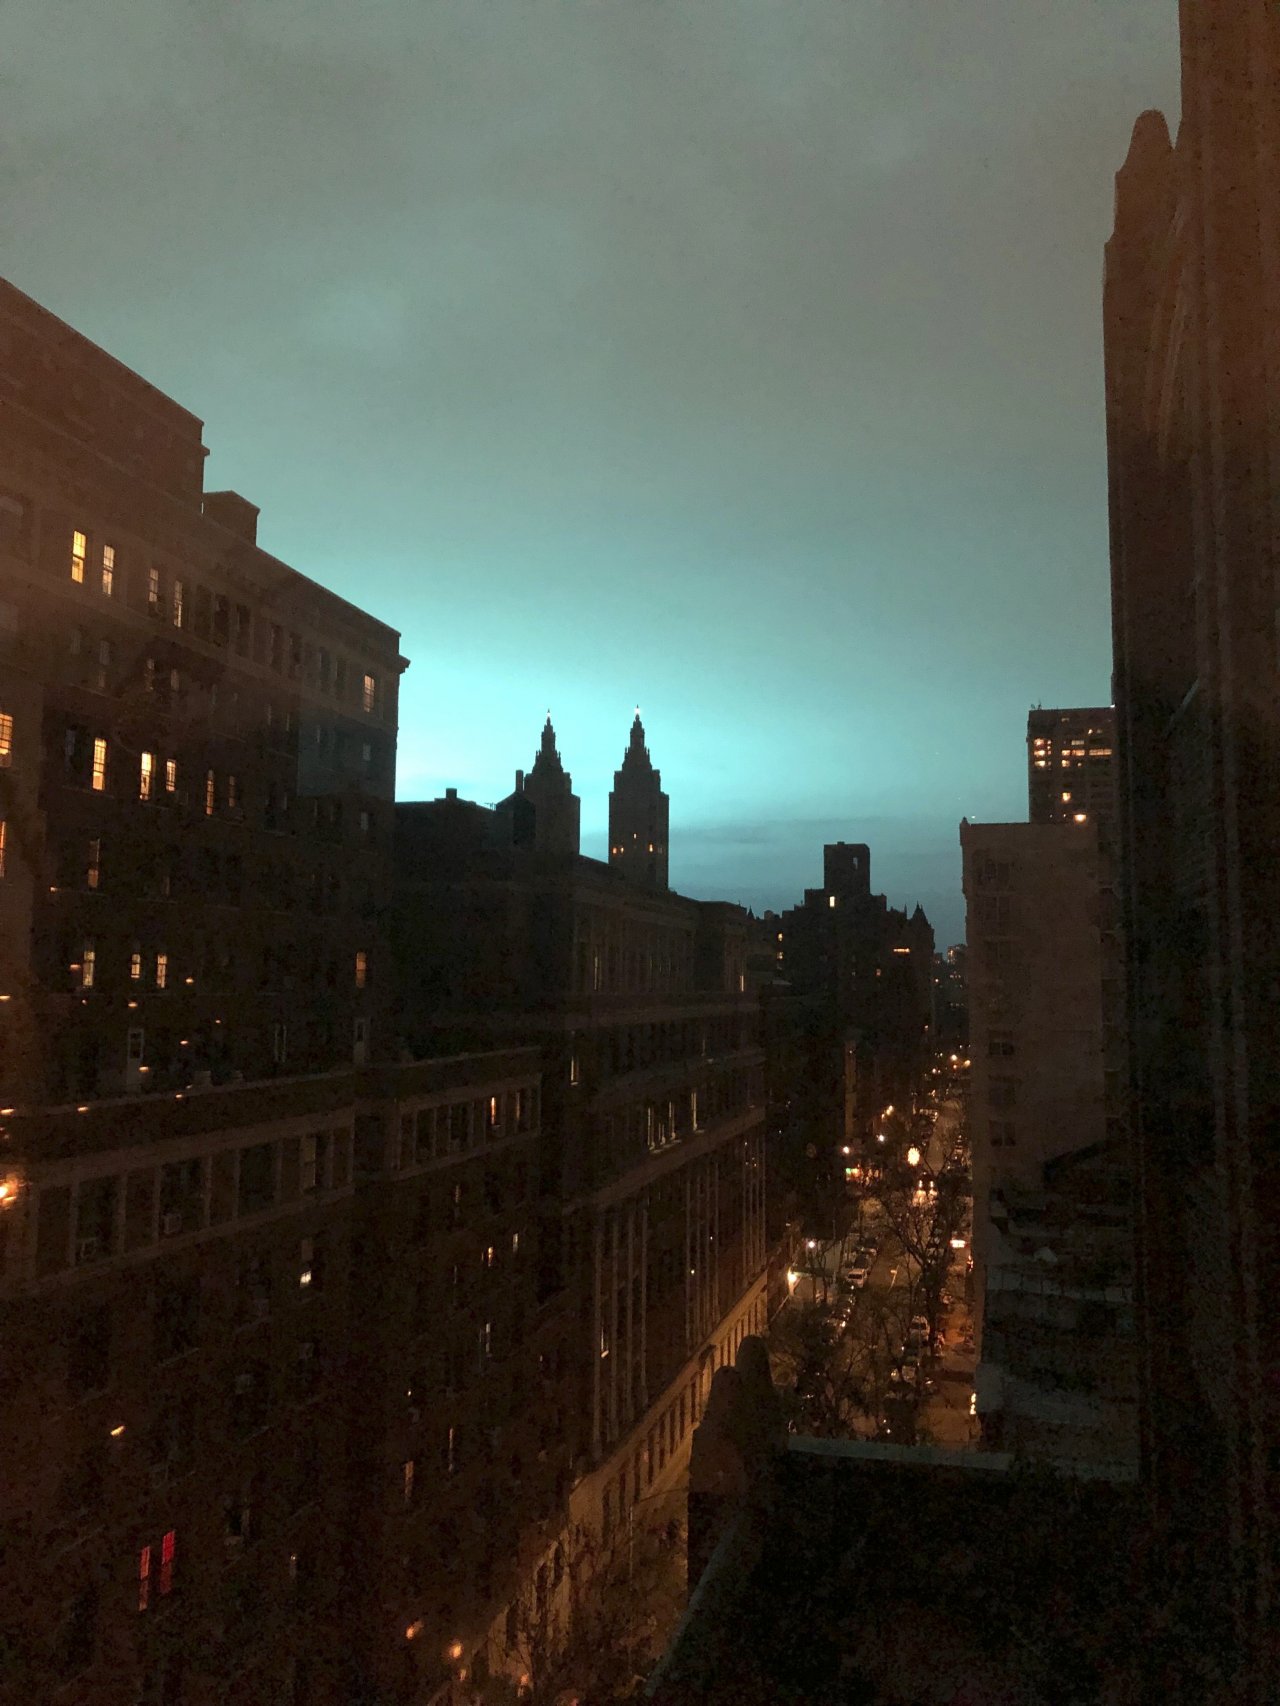 神秘藍光籠罩紐約夜空 警方推文揭謎底